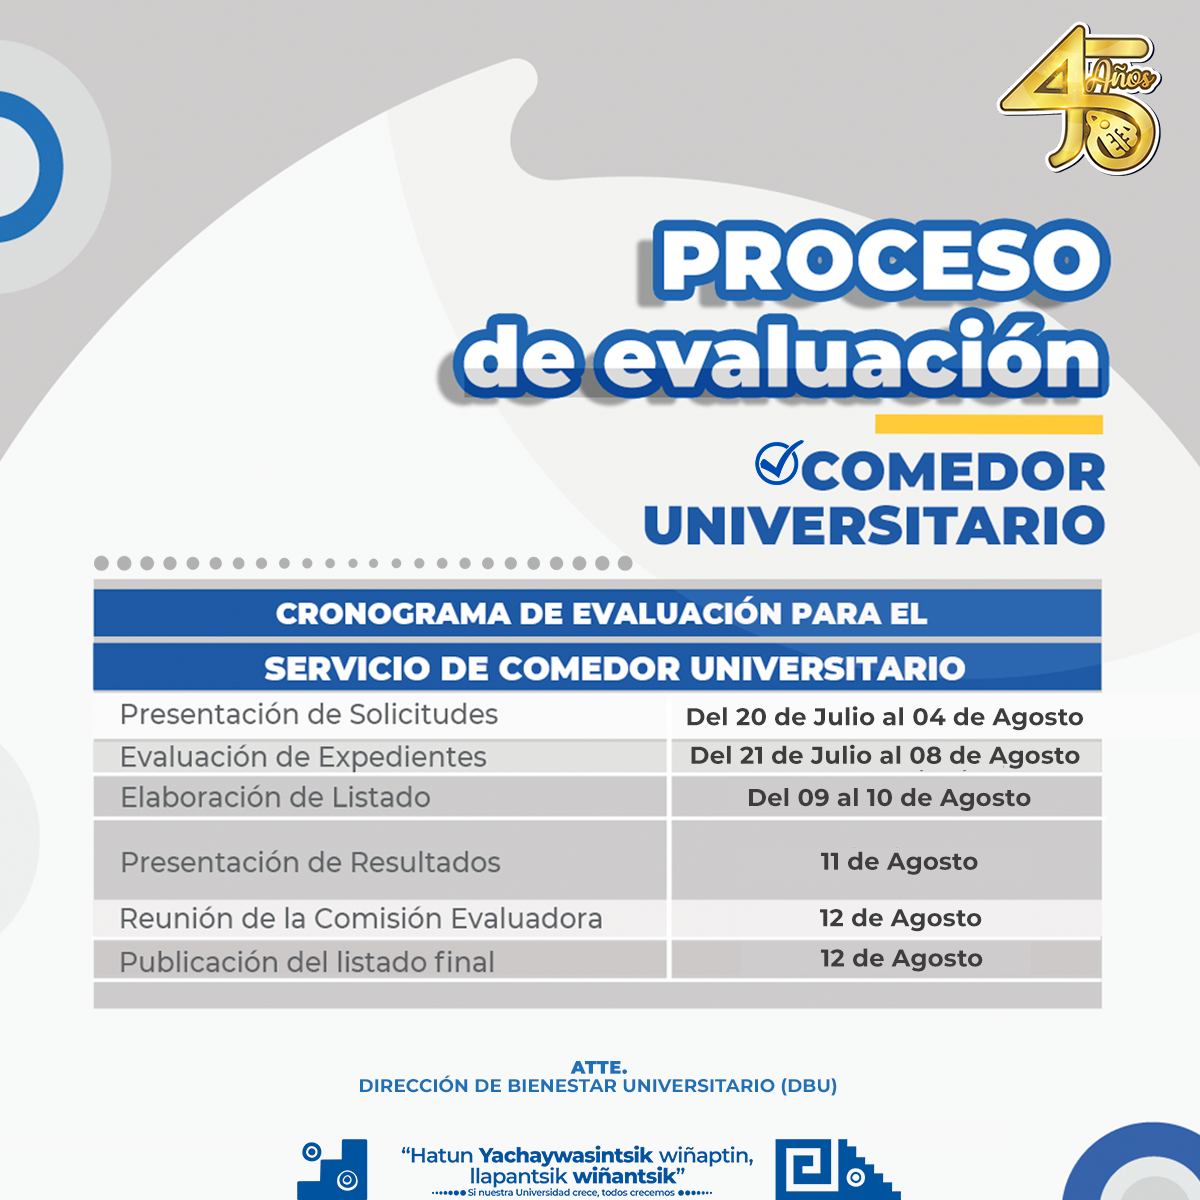  																Convocatoria del proceso de evaluación para el Comedor Universitario (Semestre 2022-I)
																